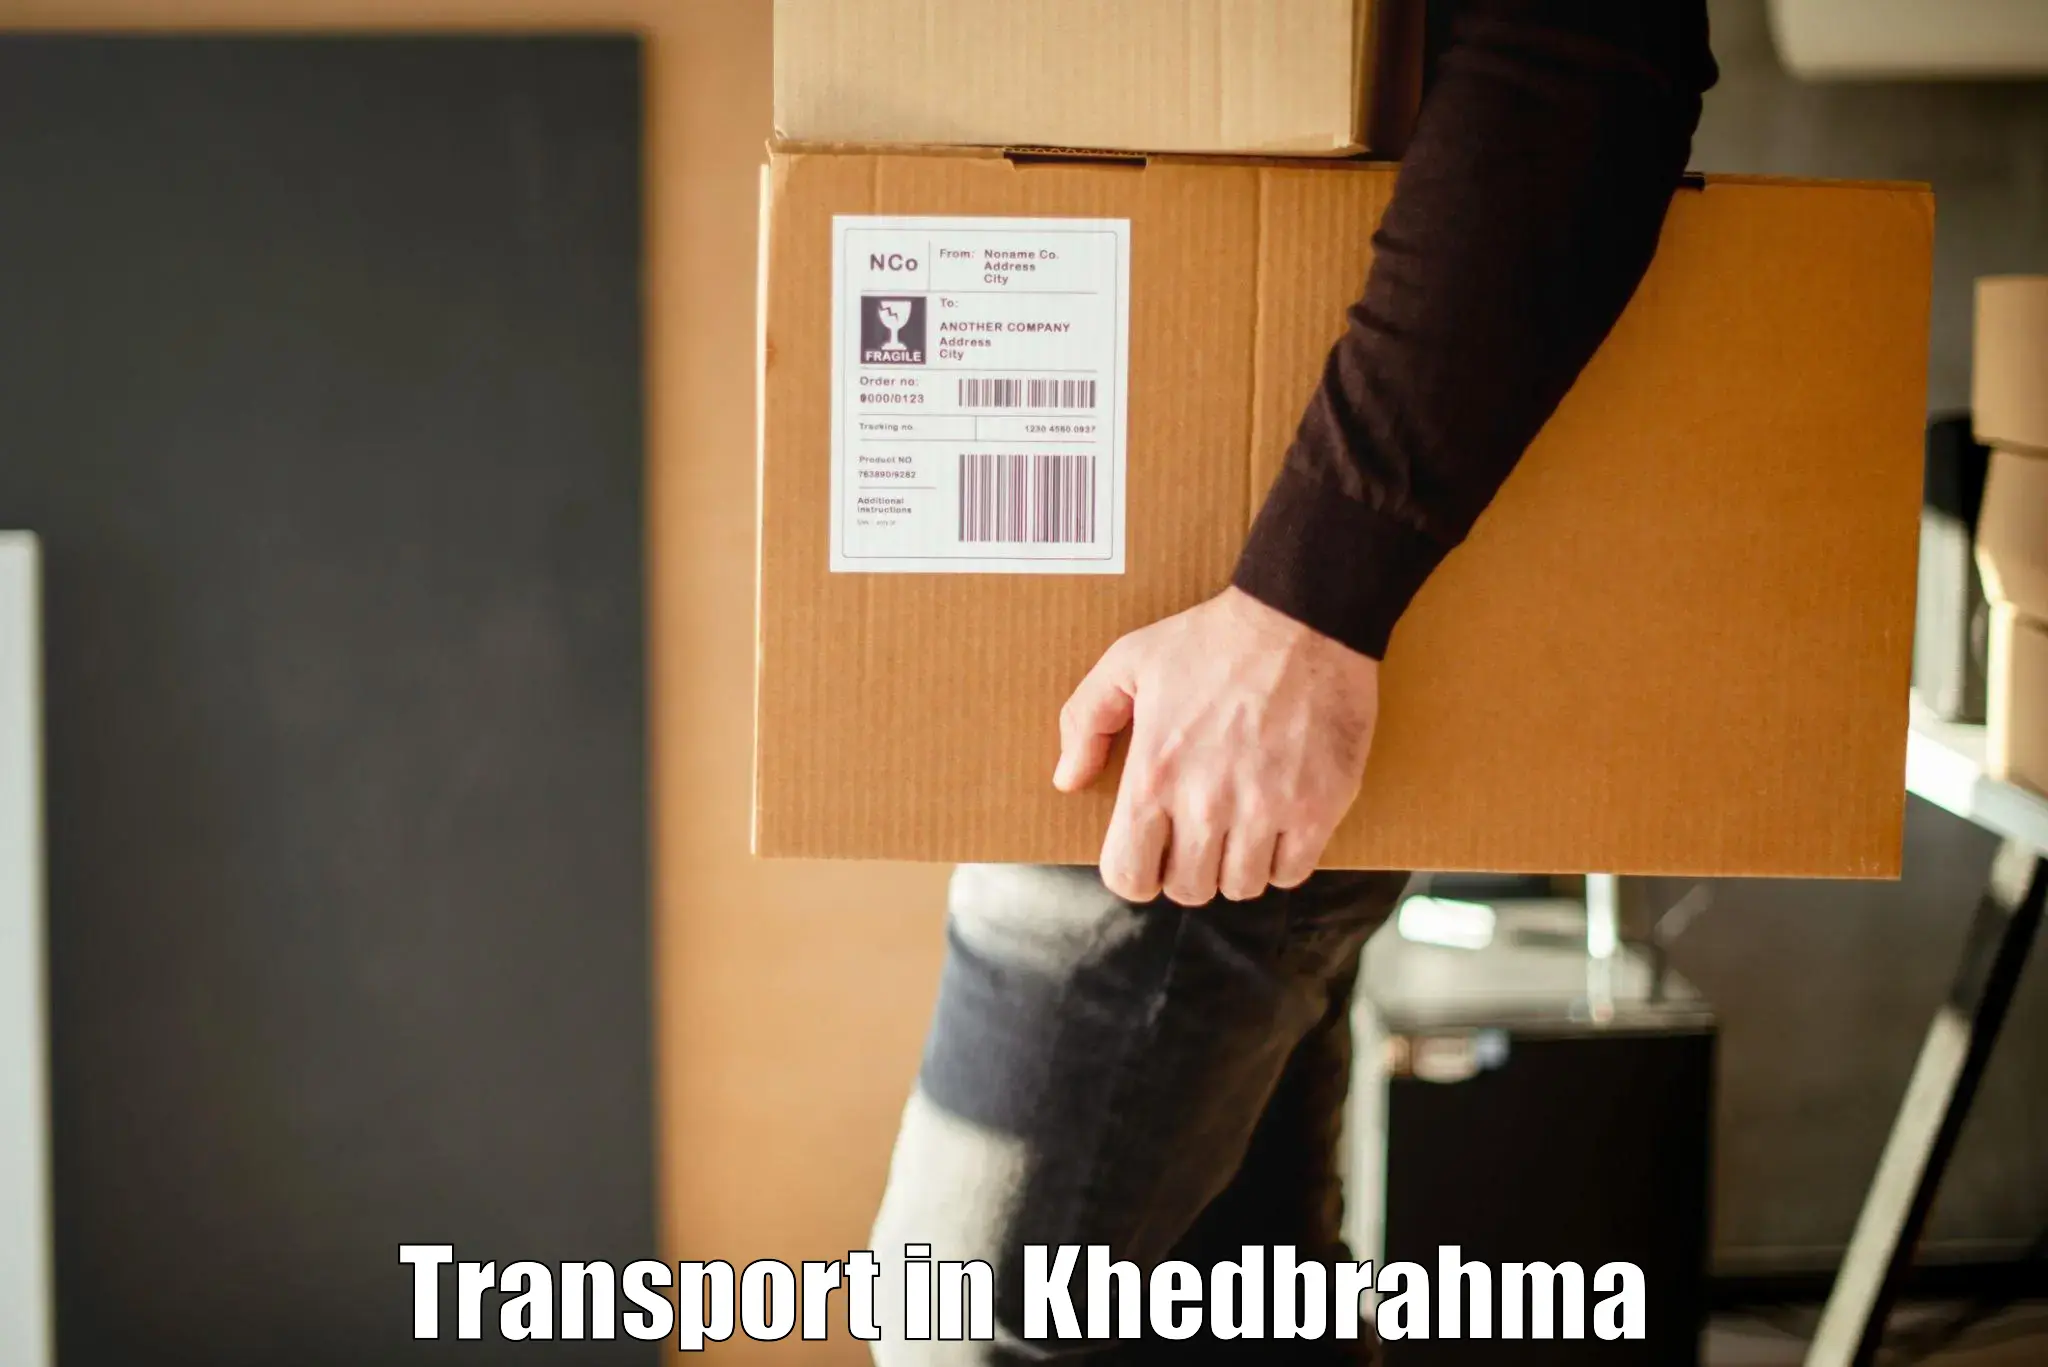 Nearest transport service in Khedbrahma